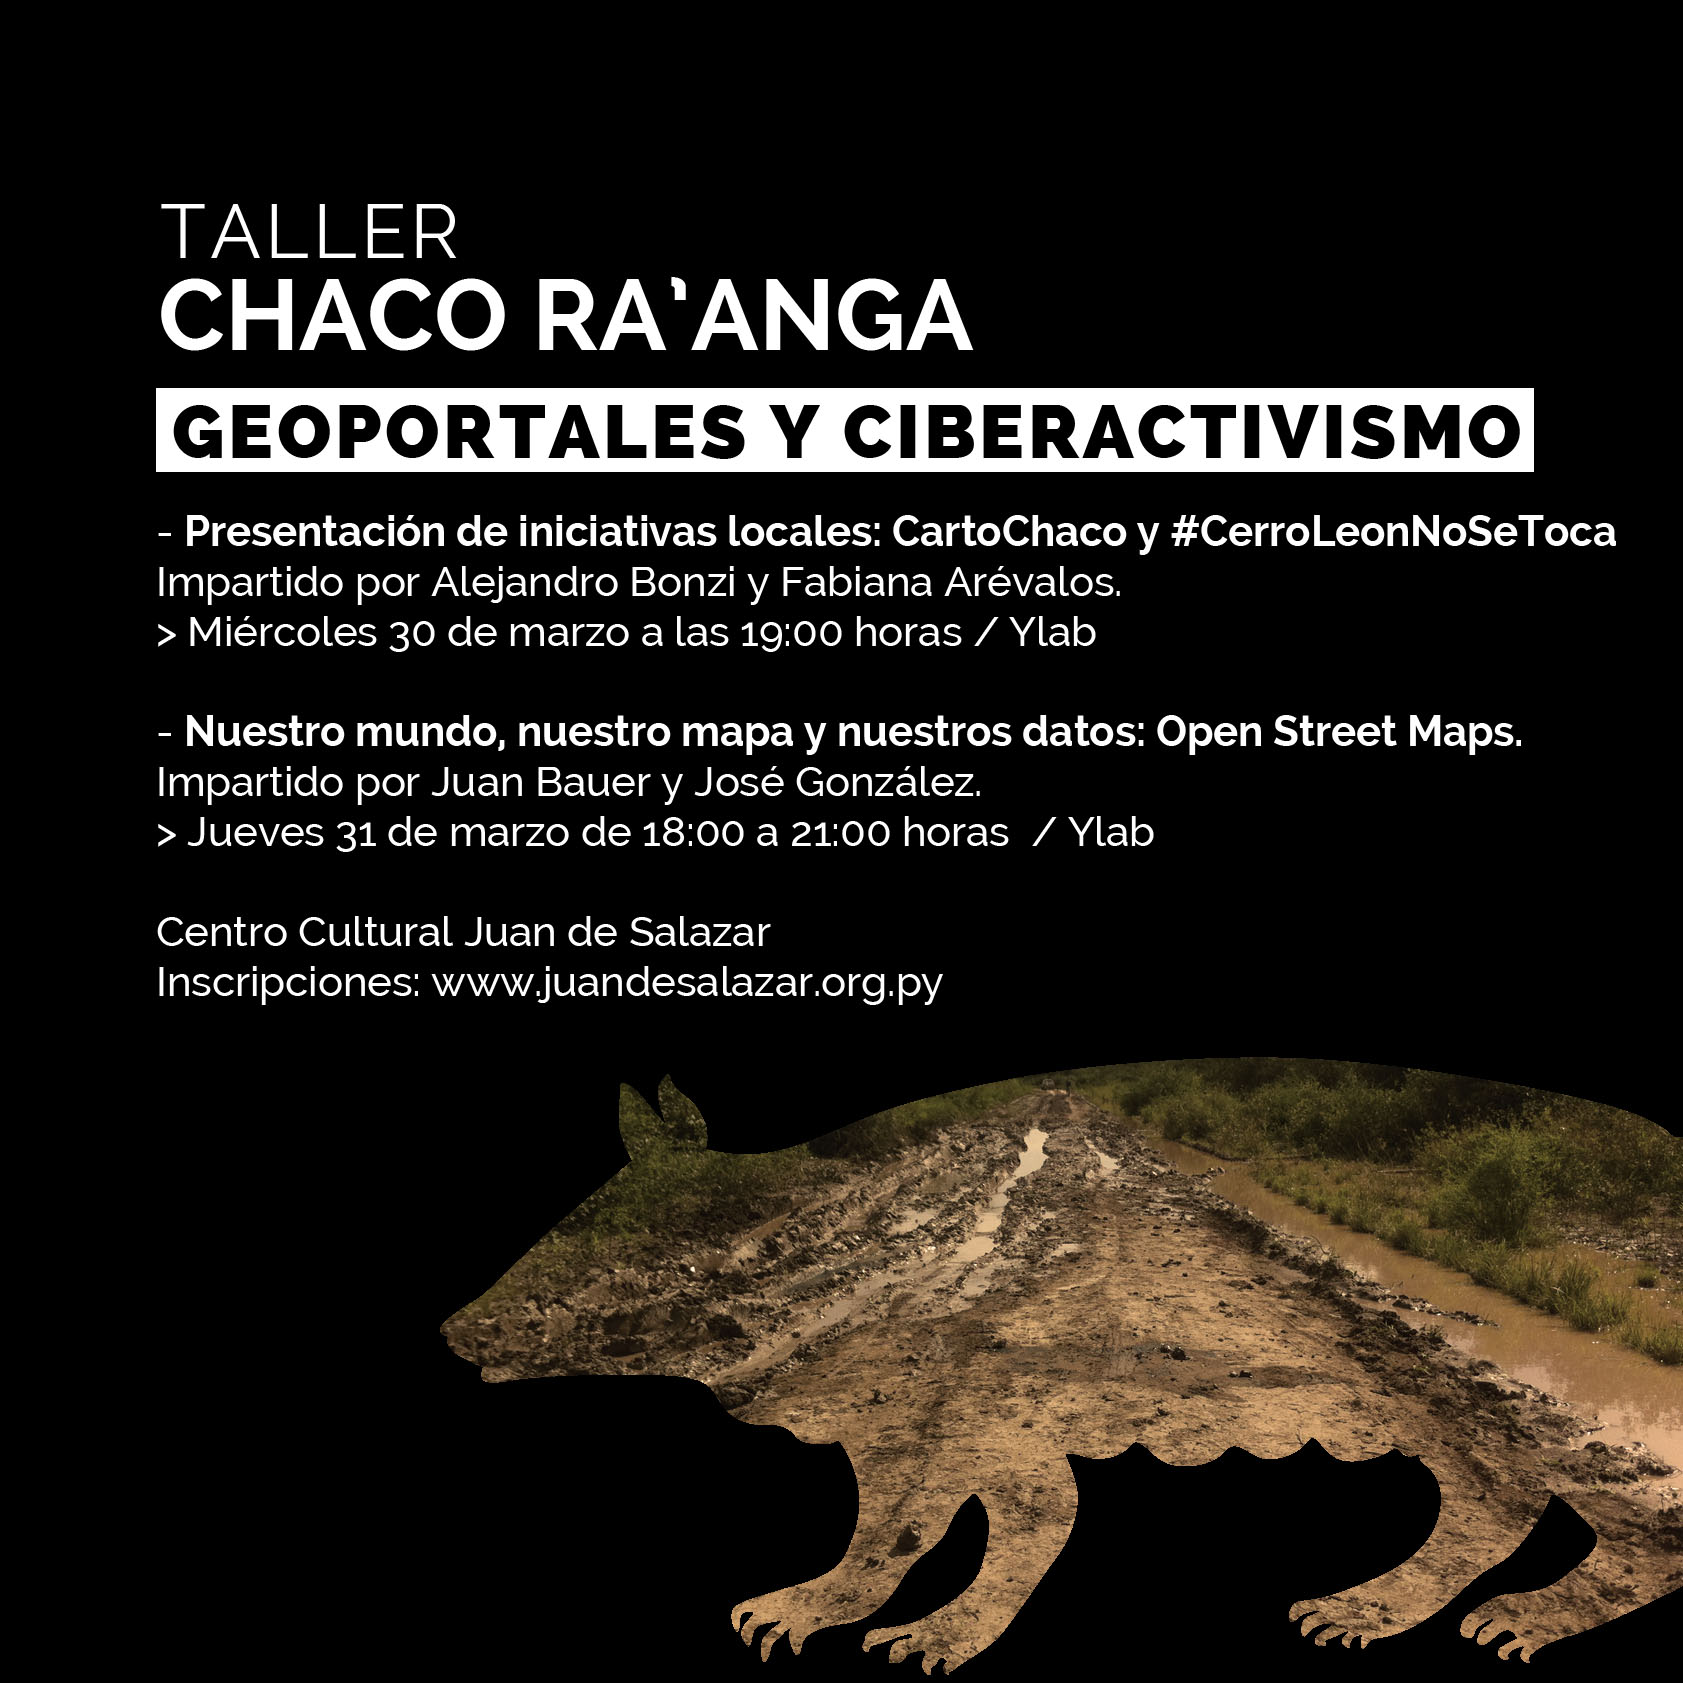 Taller Chaco Ra'anga